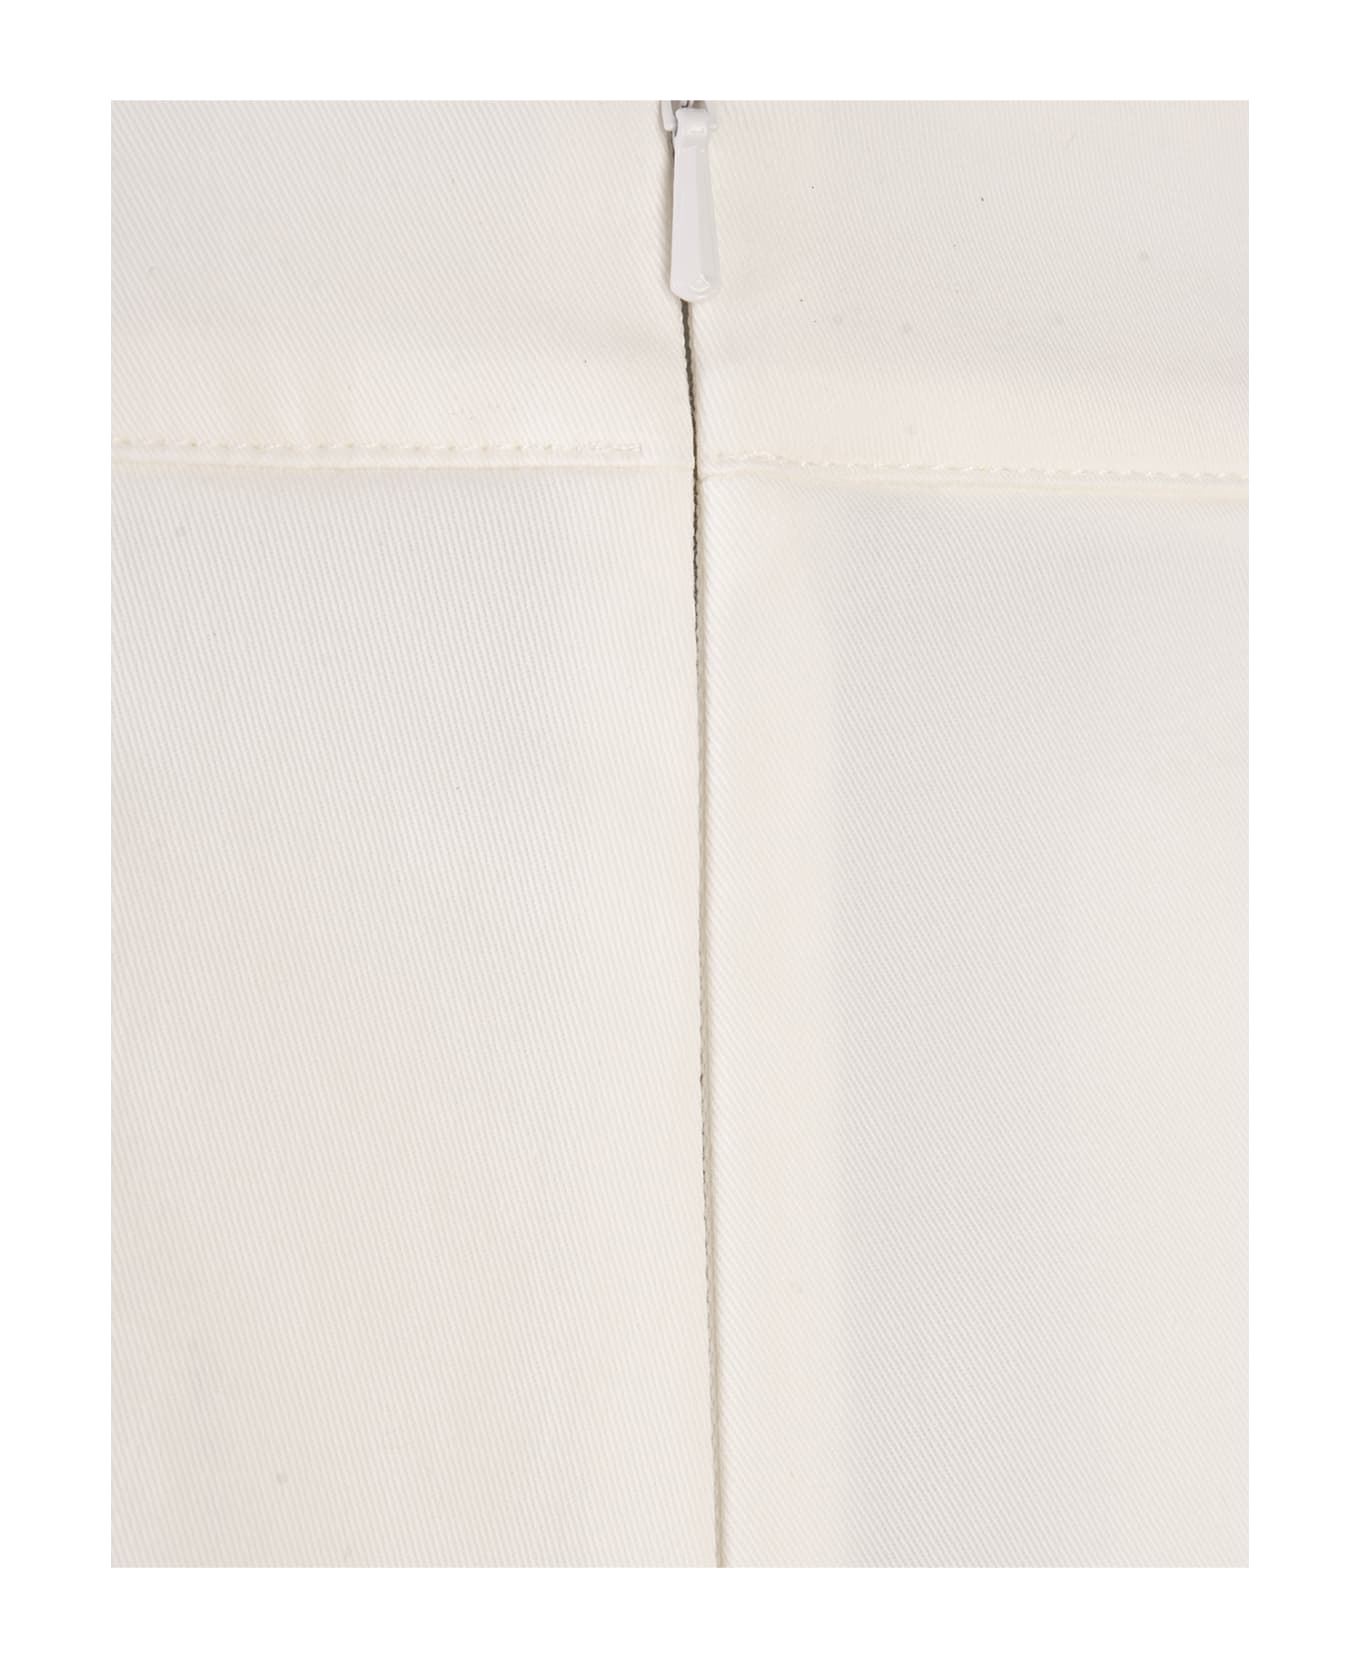 Max Mara White Riad Shorts - White ショートパンツ